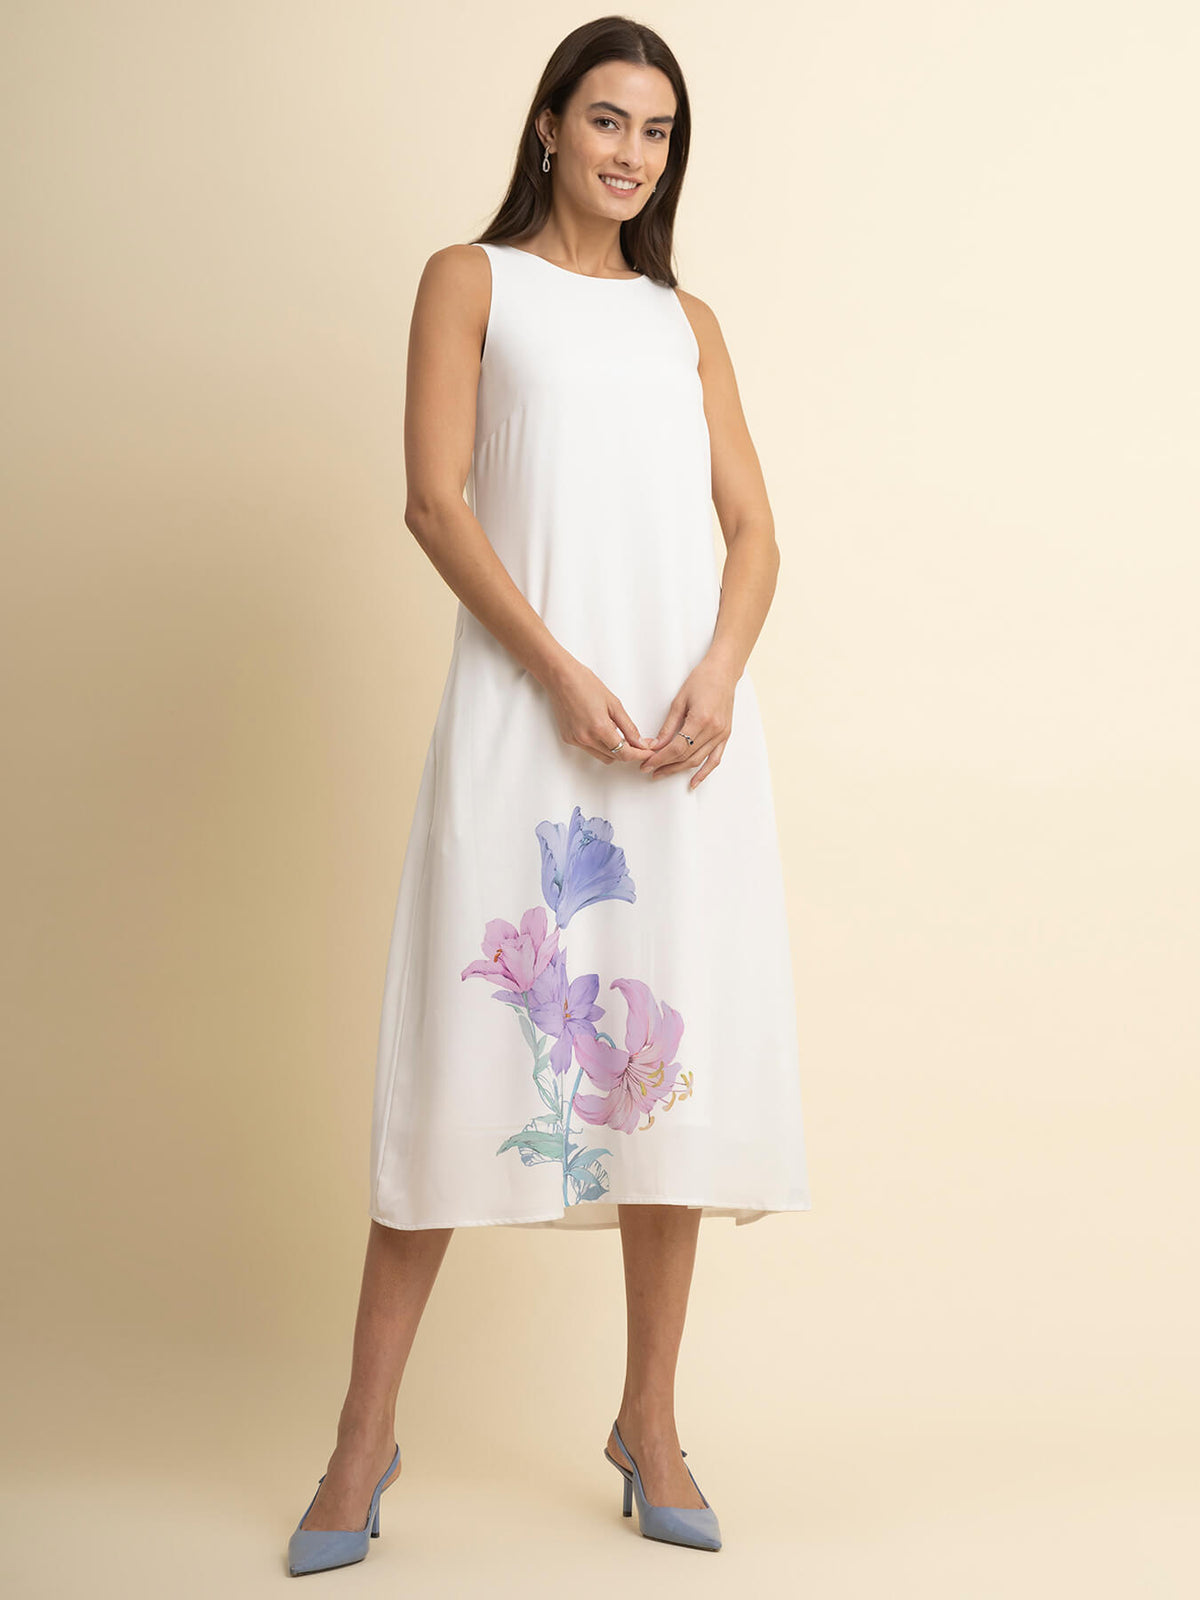 Floral Print A-Line Dress - White